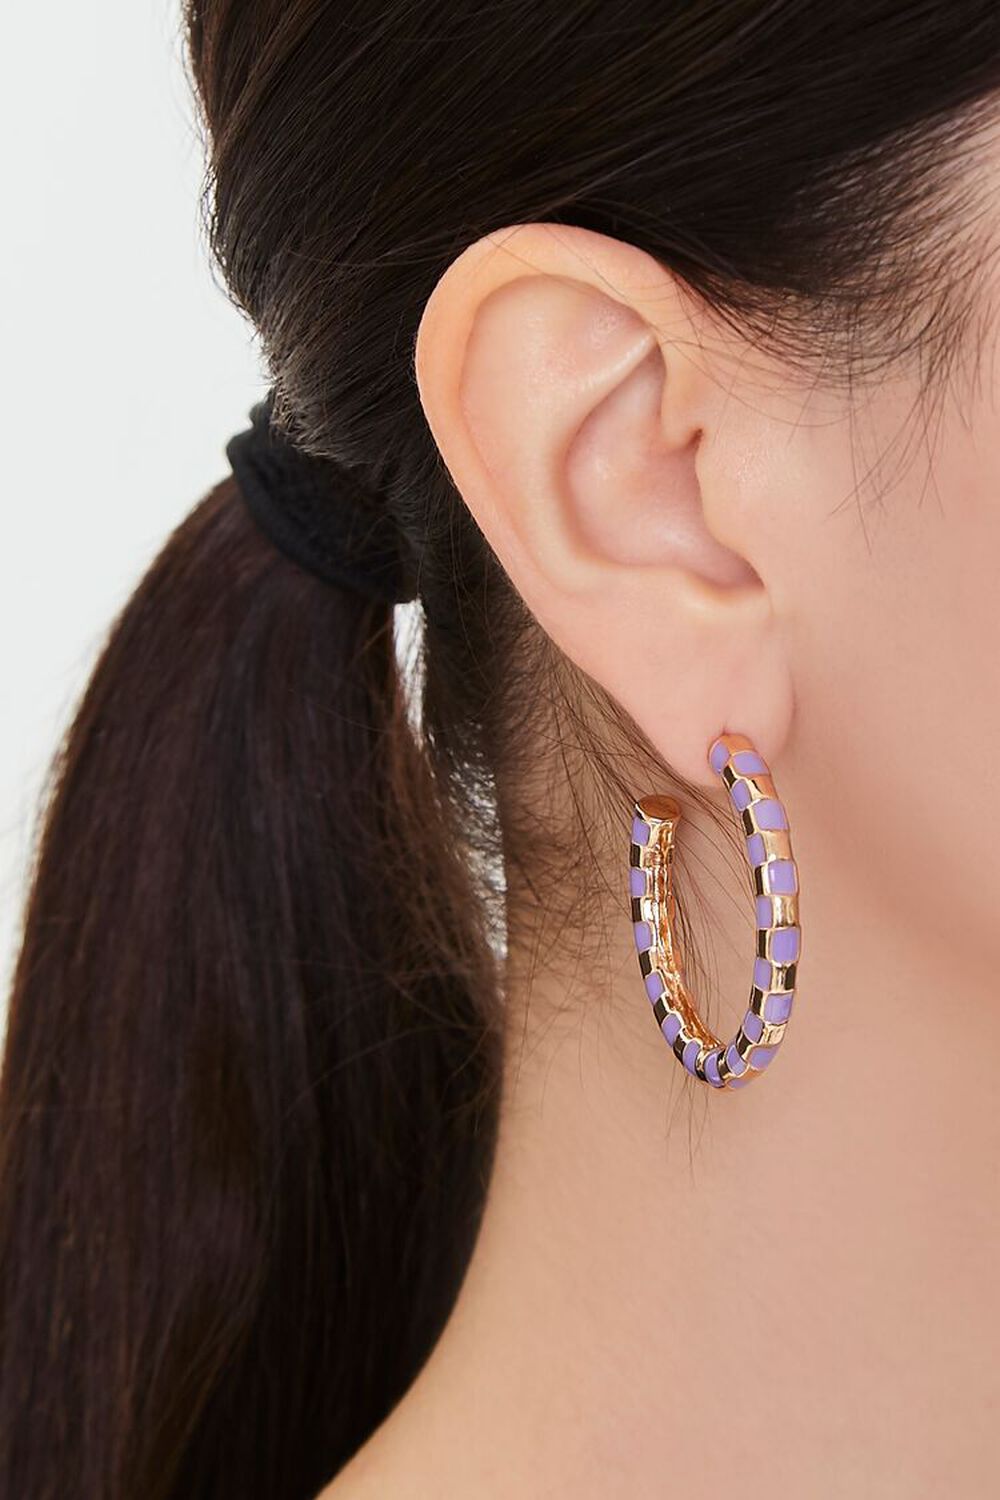 GOLD/PURPLE Speckled Open-End Hoop Earrings, image 1